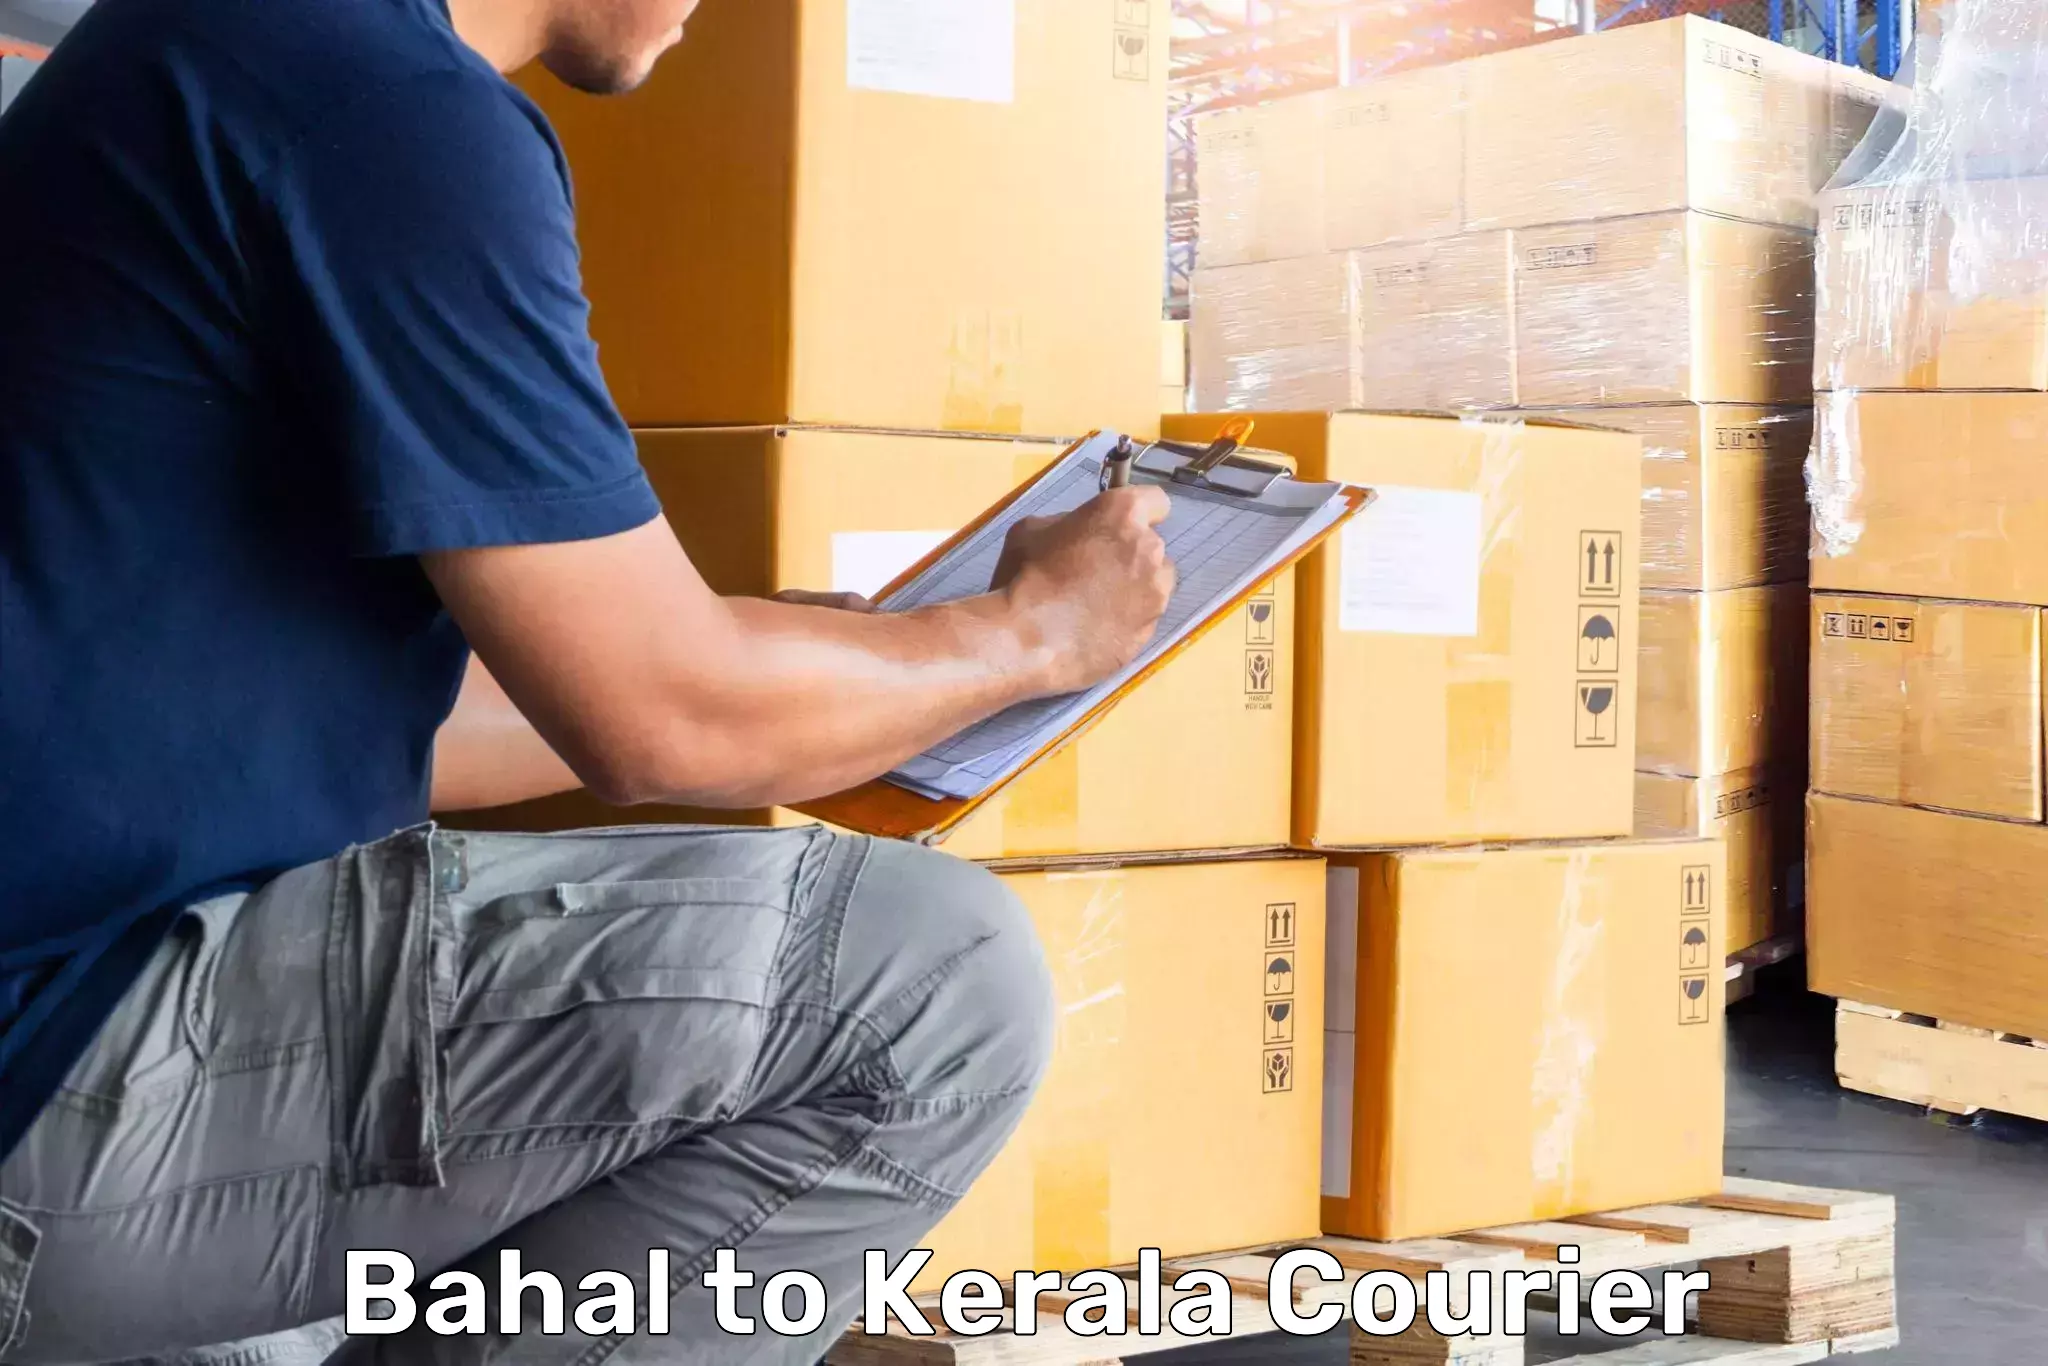 Baggage shipping calculator Bahal to Kerala